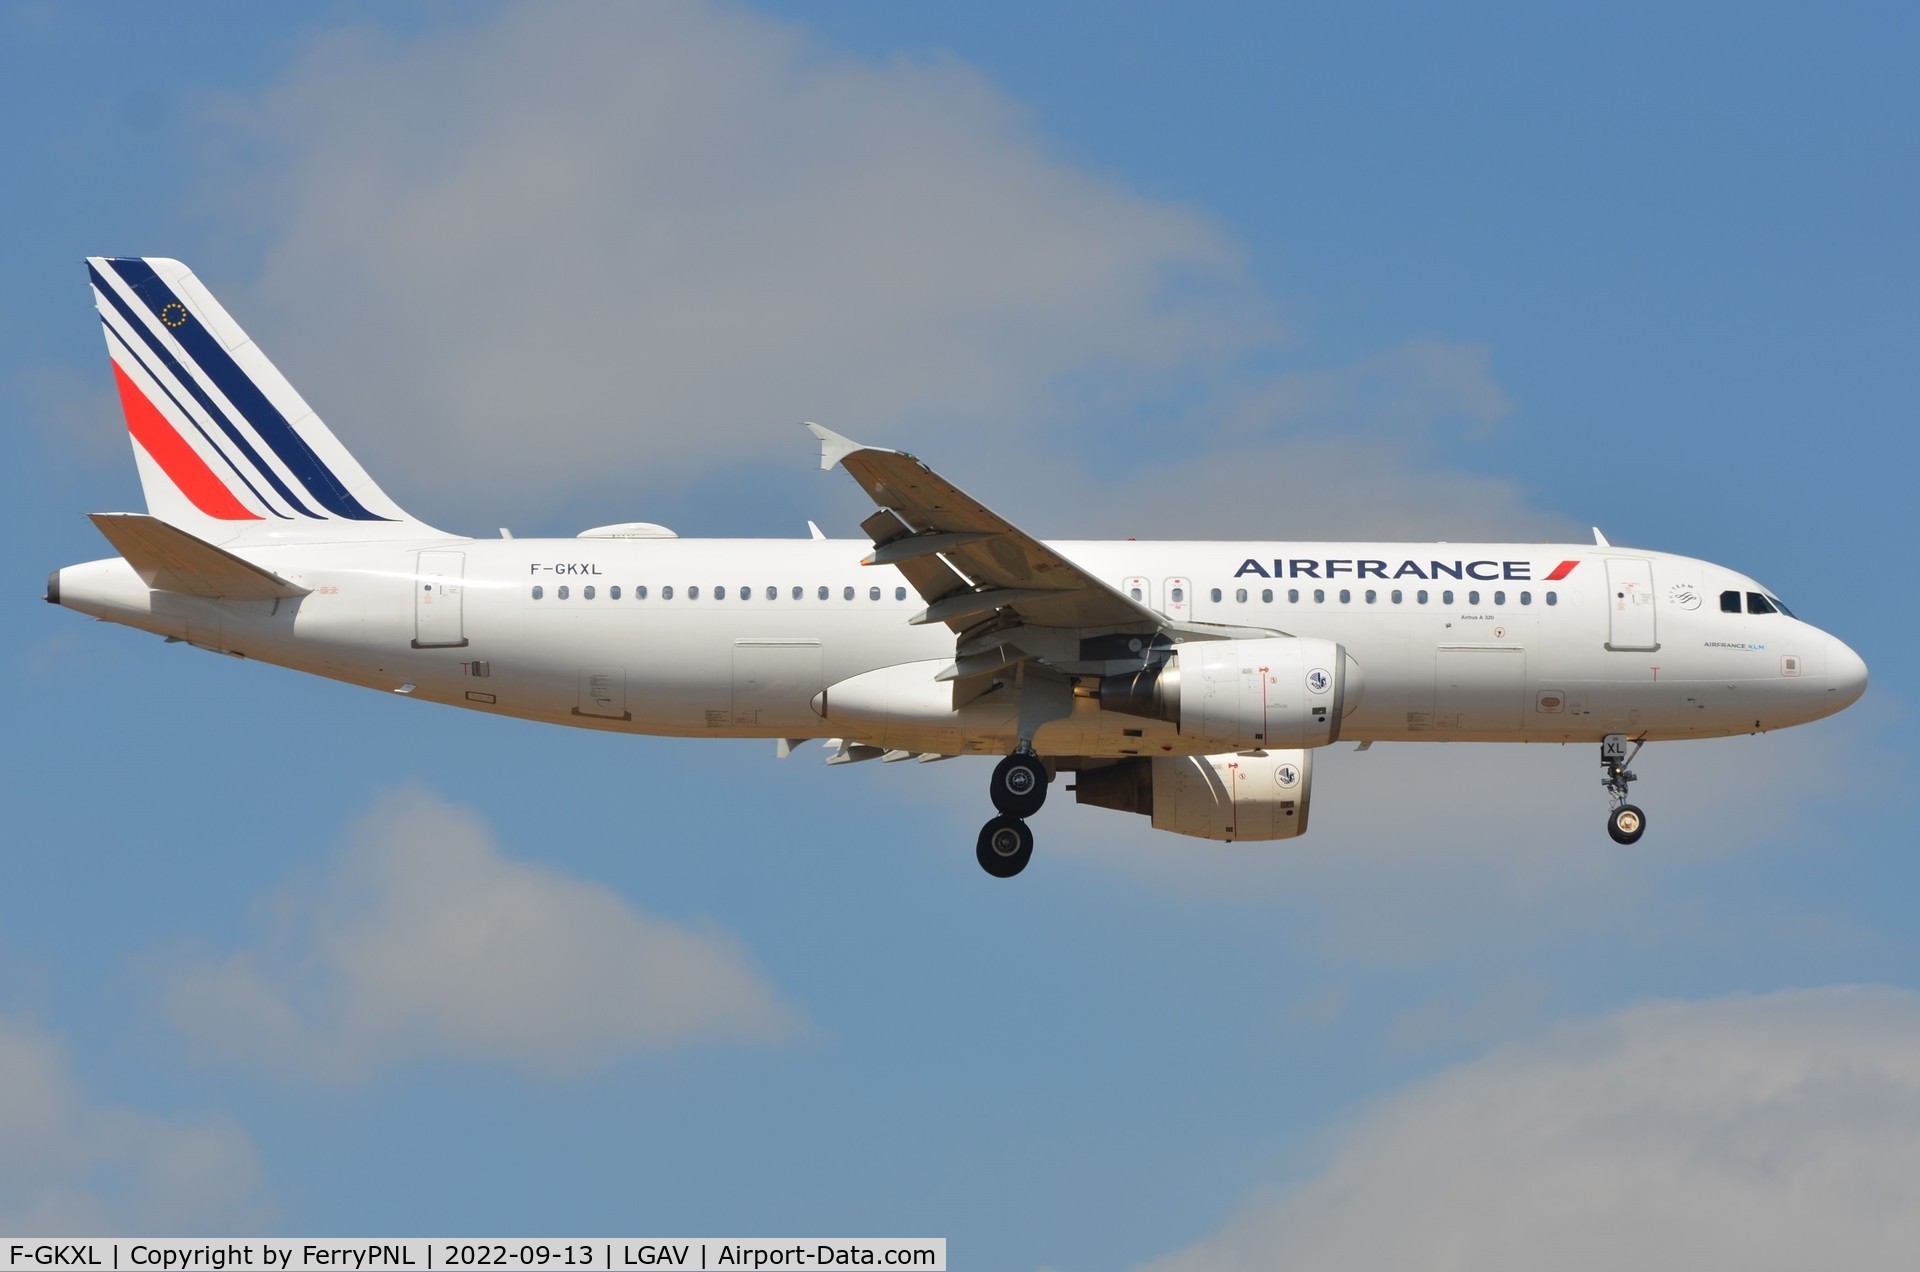 F-GKXL, 2006 Airbus A320-214 C/N 2705, Air France A320